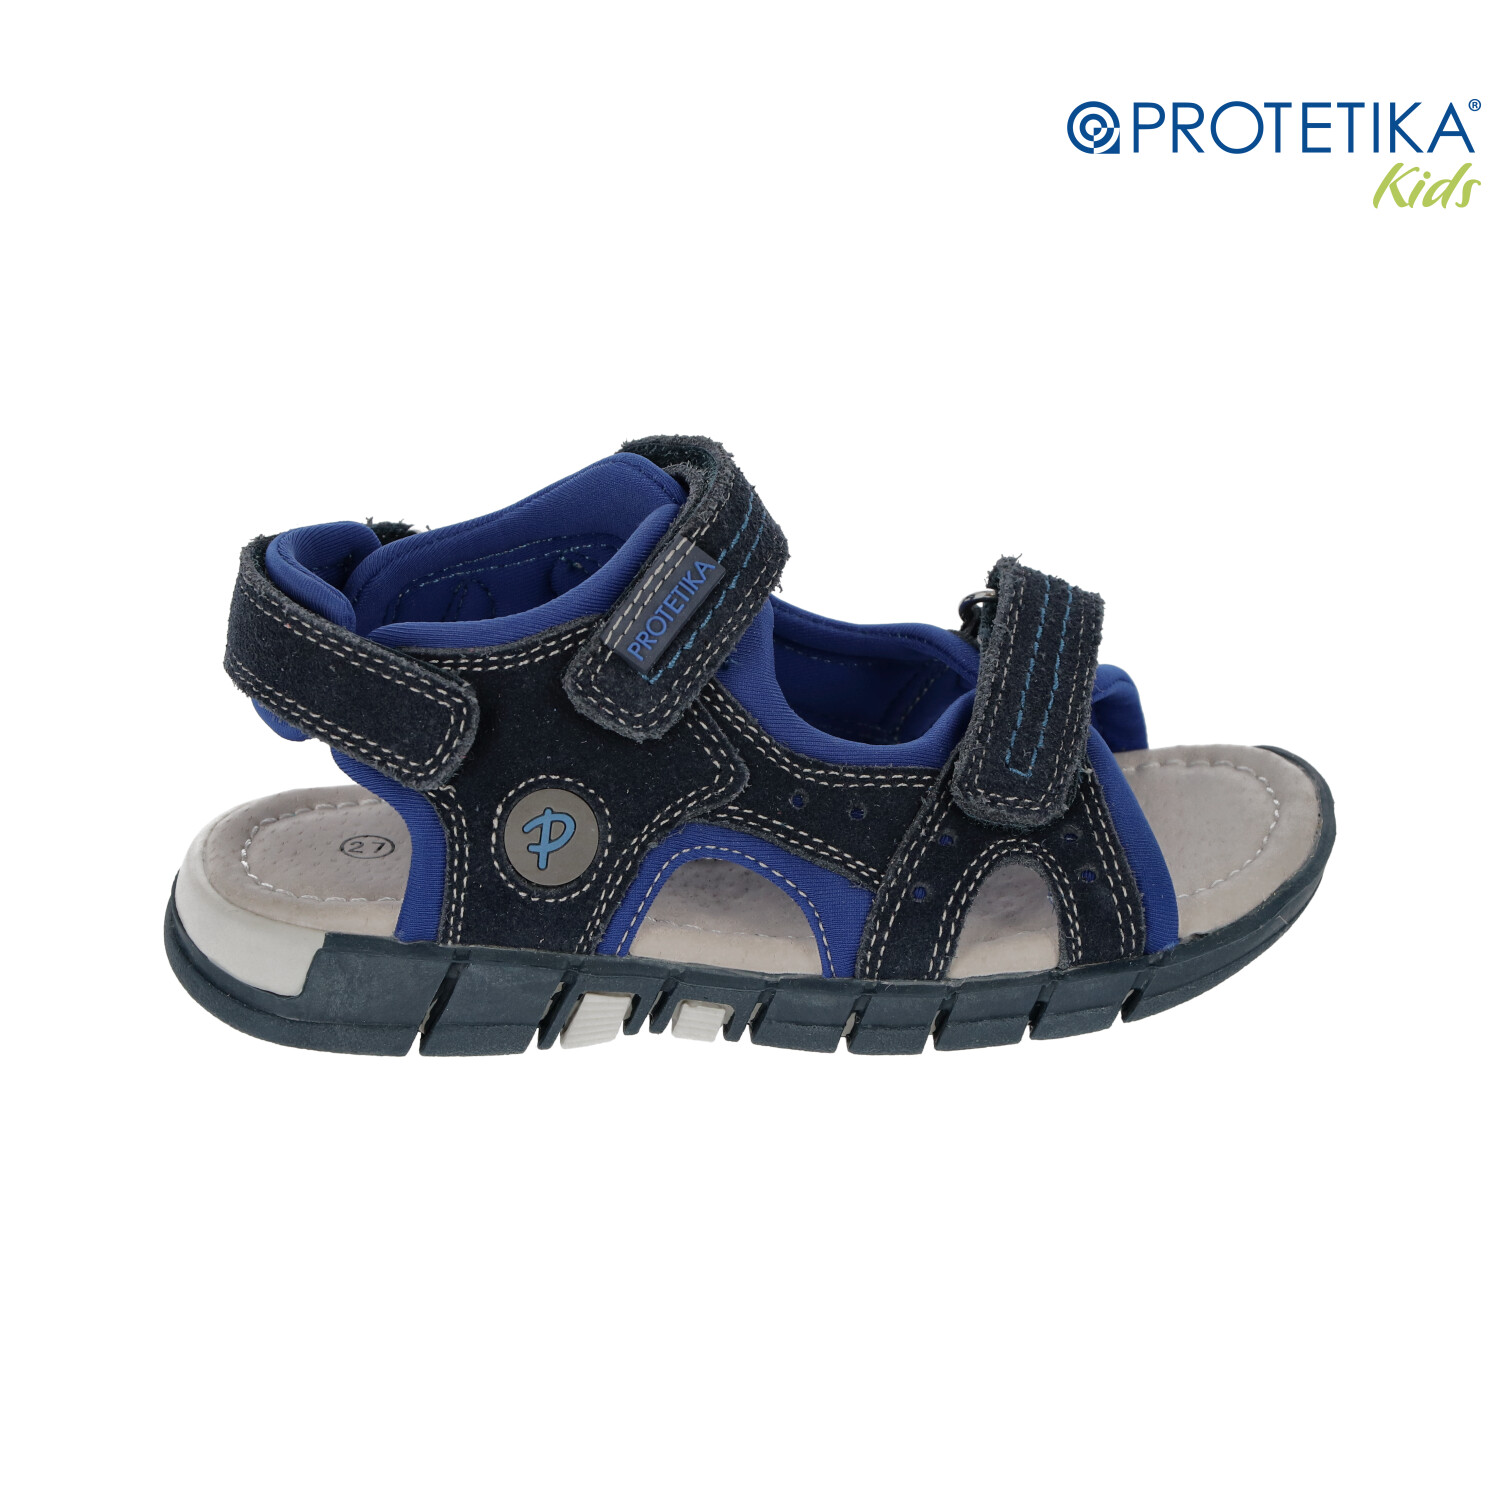 Protetika - sandále SEDRIK navy